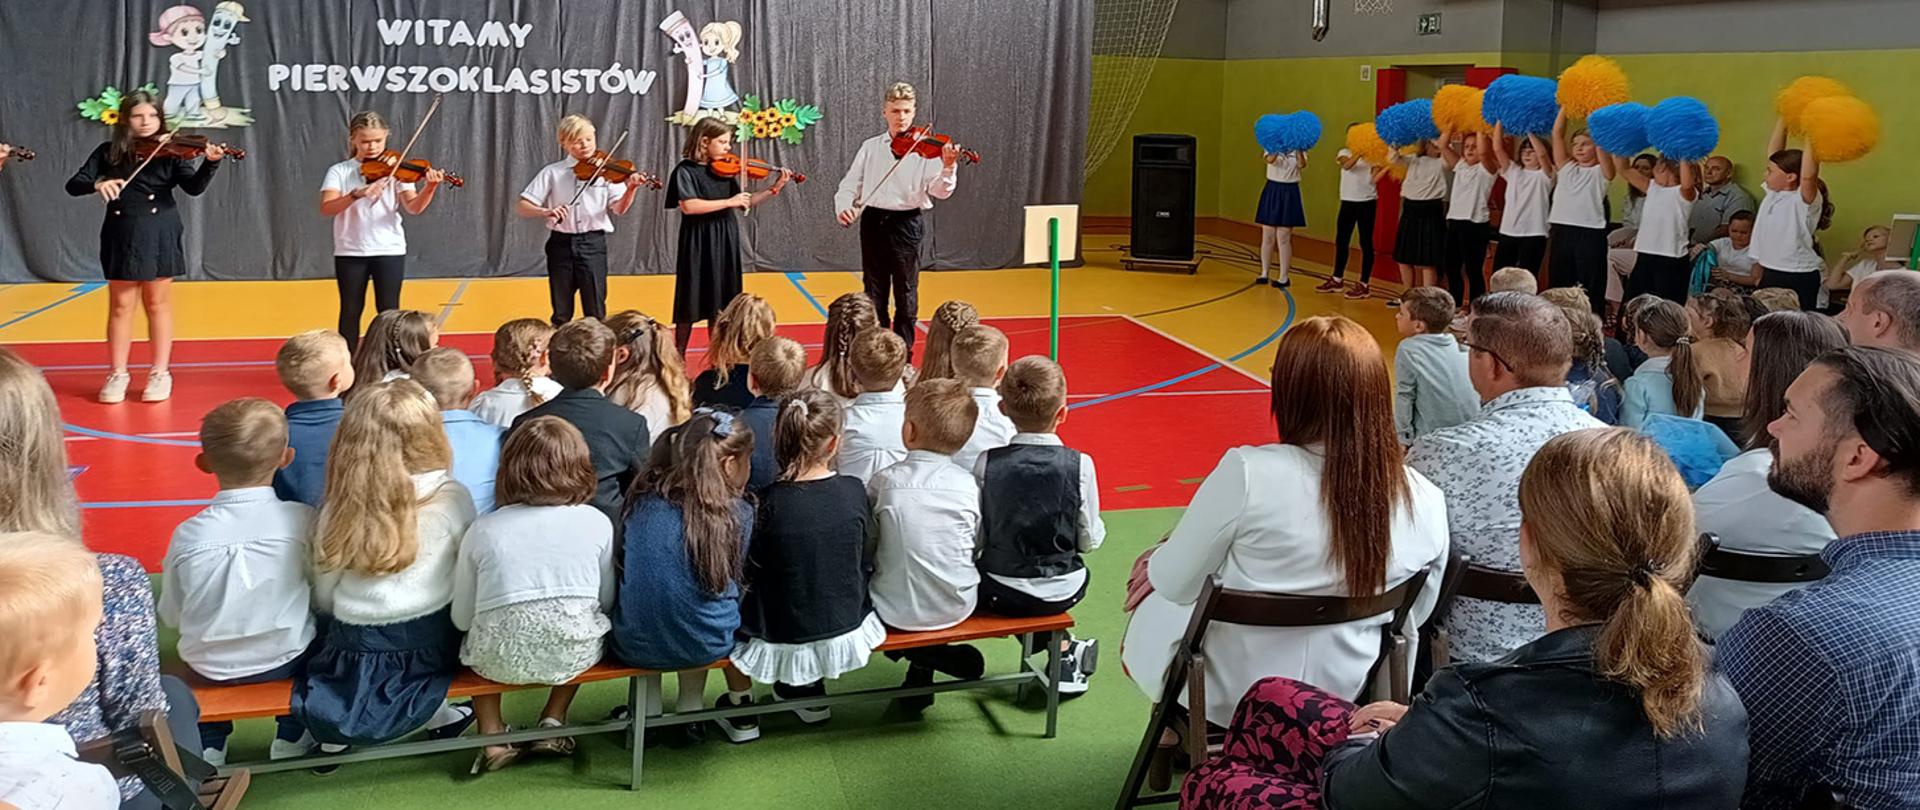 Uczniowie grający na skrzypcach oglądani przez dzieci szkolne i rodziców.